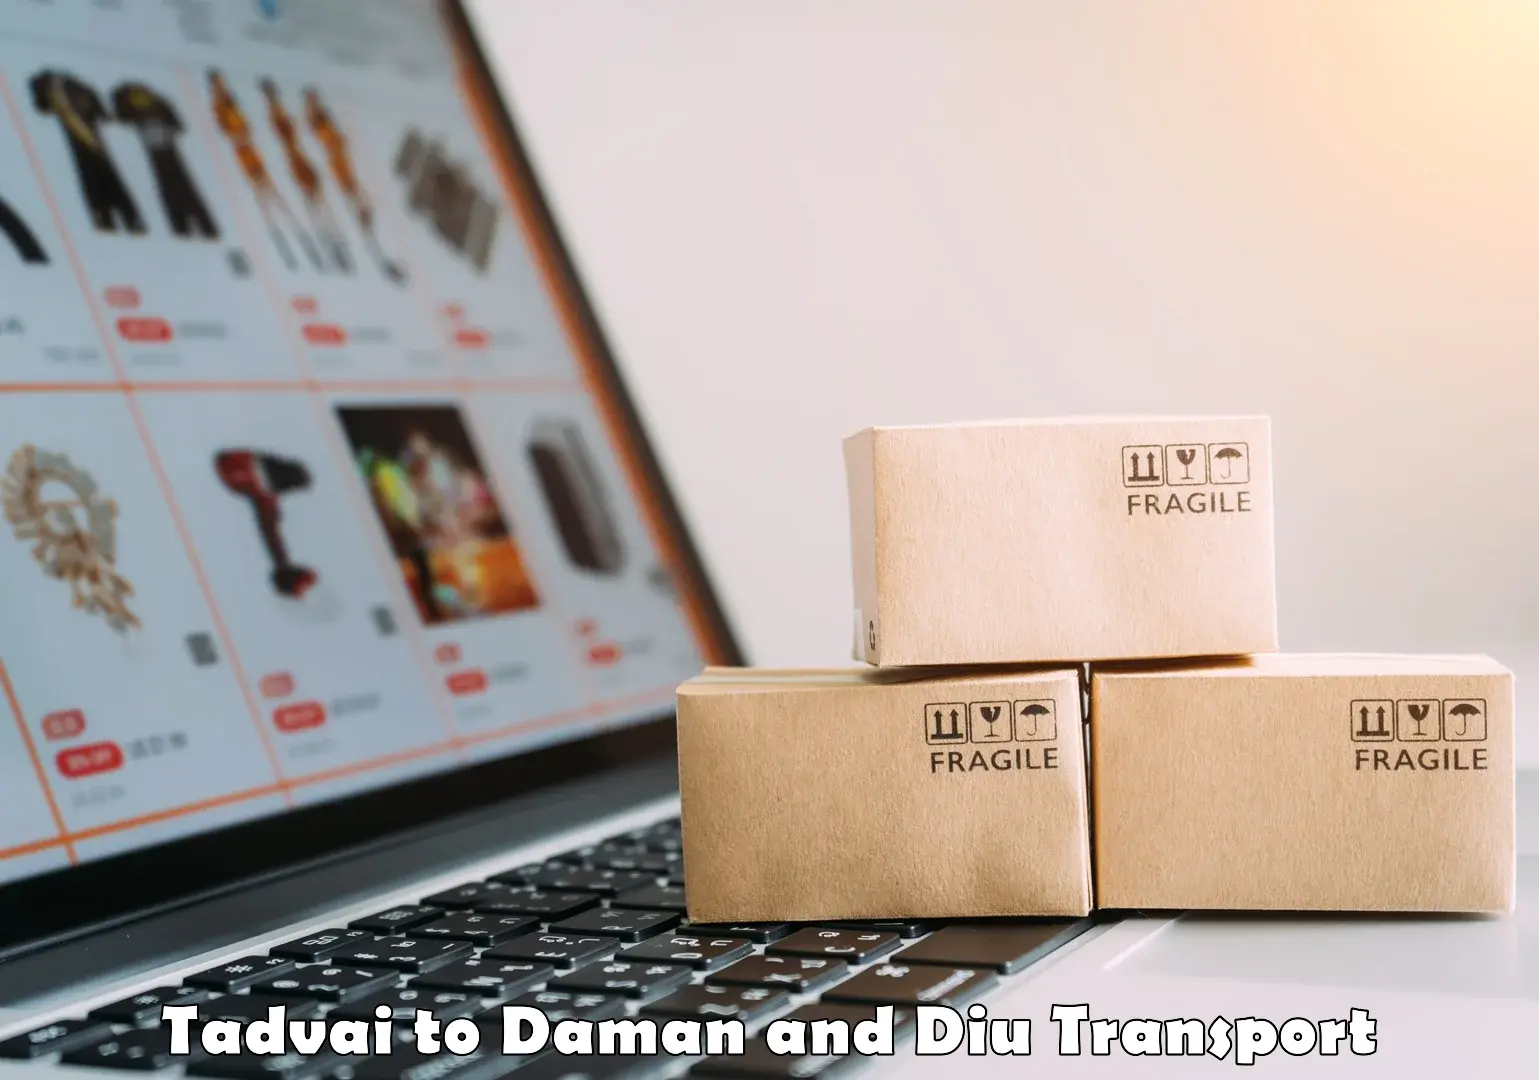 International cargo transportation services Tadvai to Daman and Diu